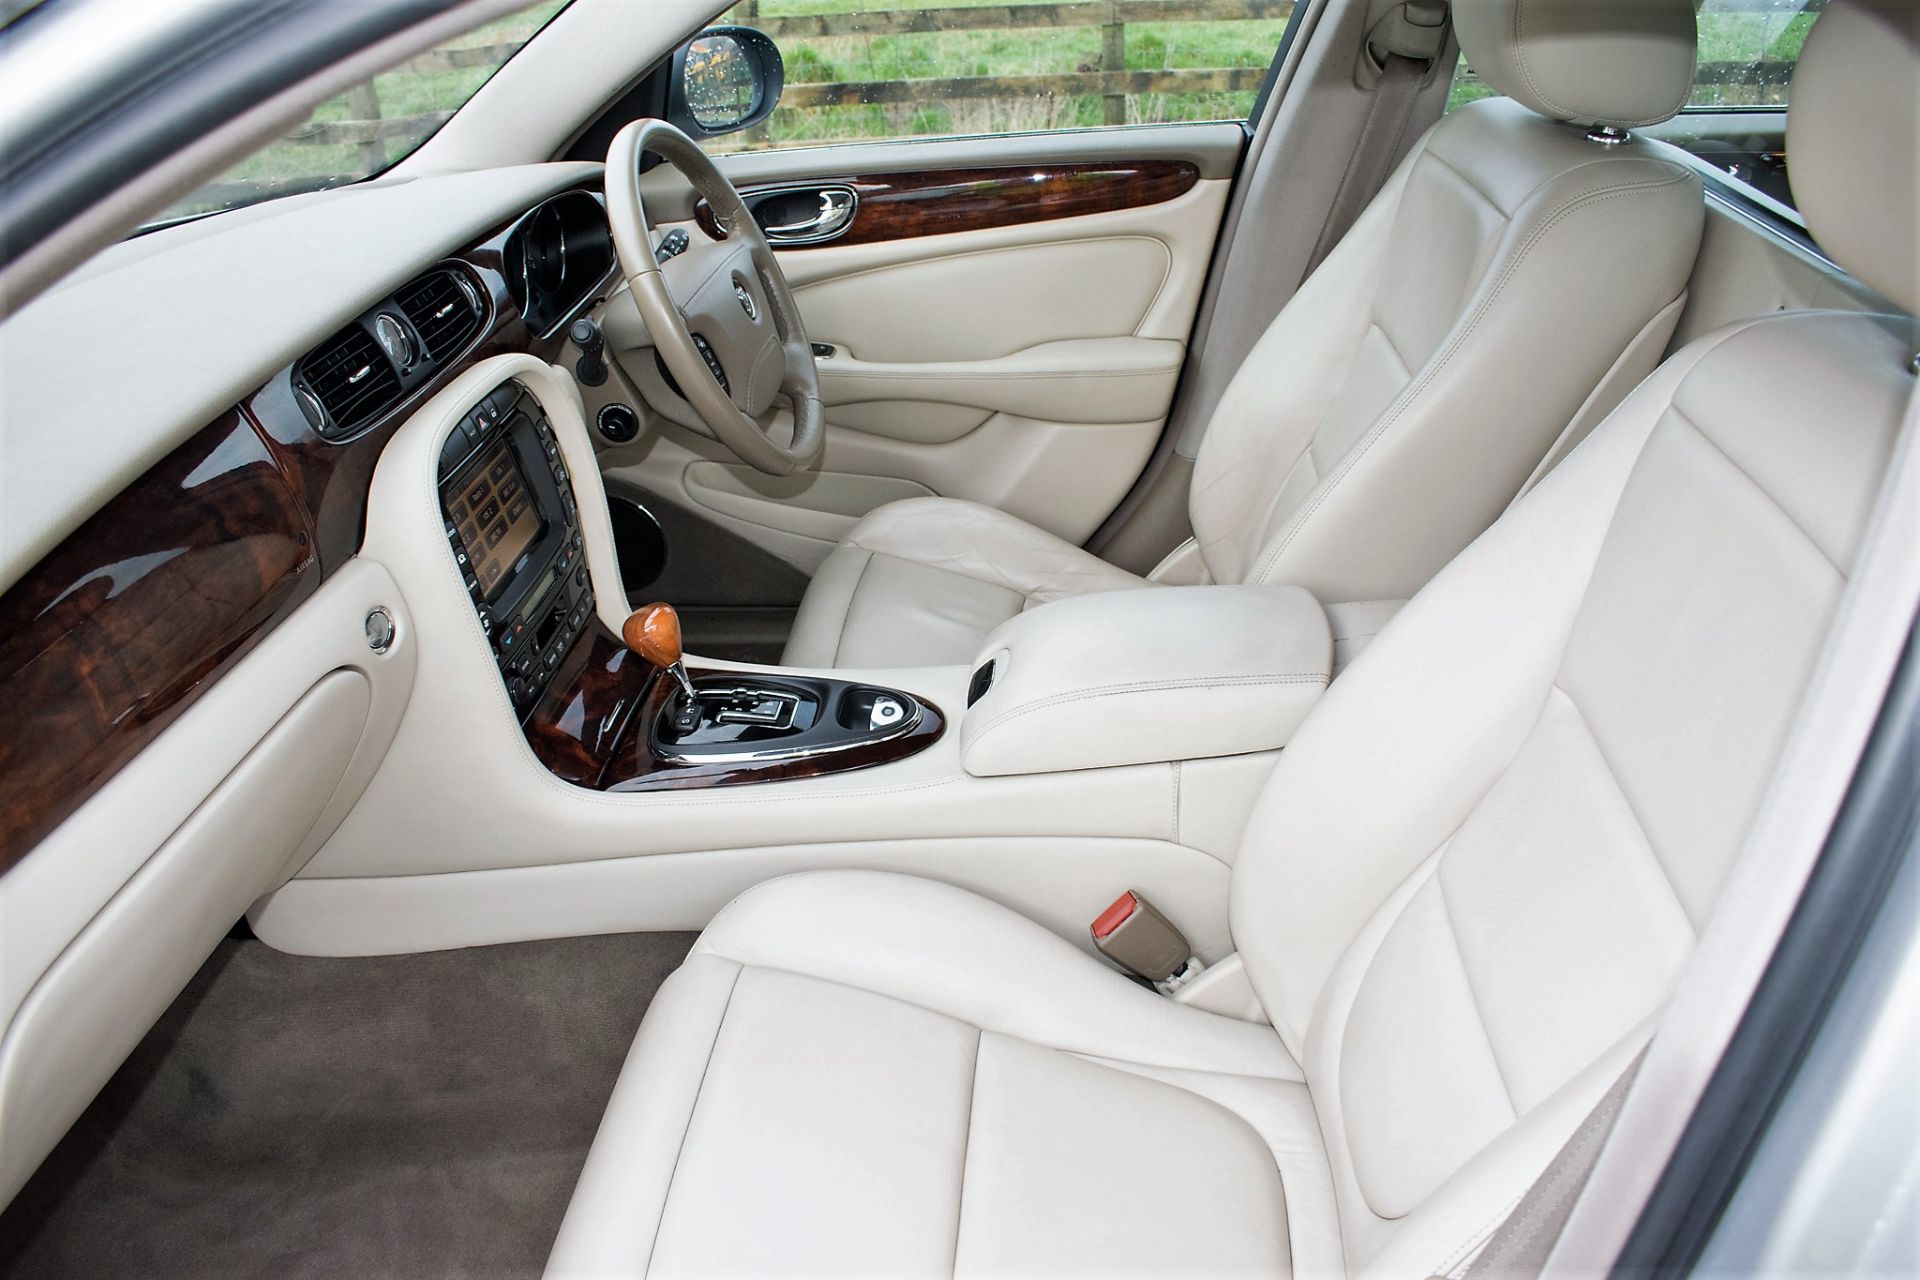 Jaguar XJ6 V6 automatic stretch Limousine Registration Number: BW54 YNK (Registration Number - Image 13 of 21